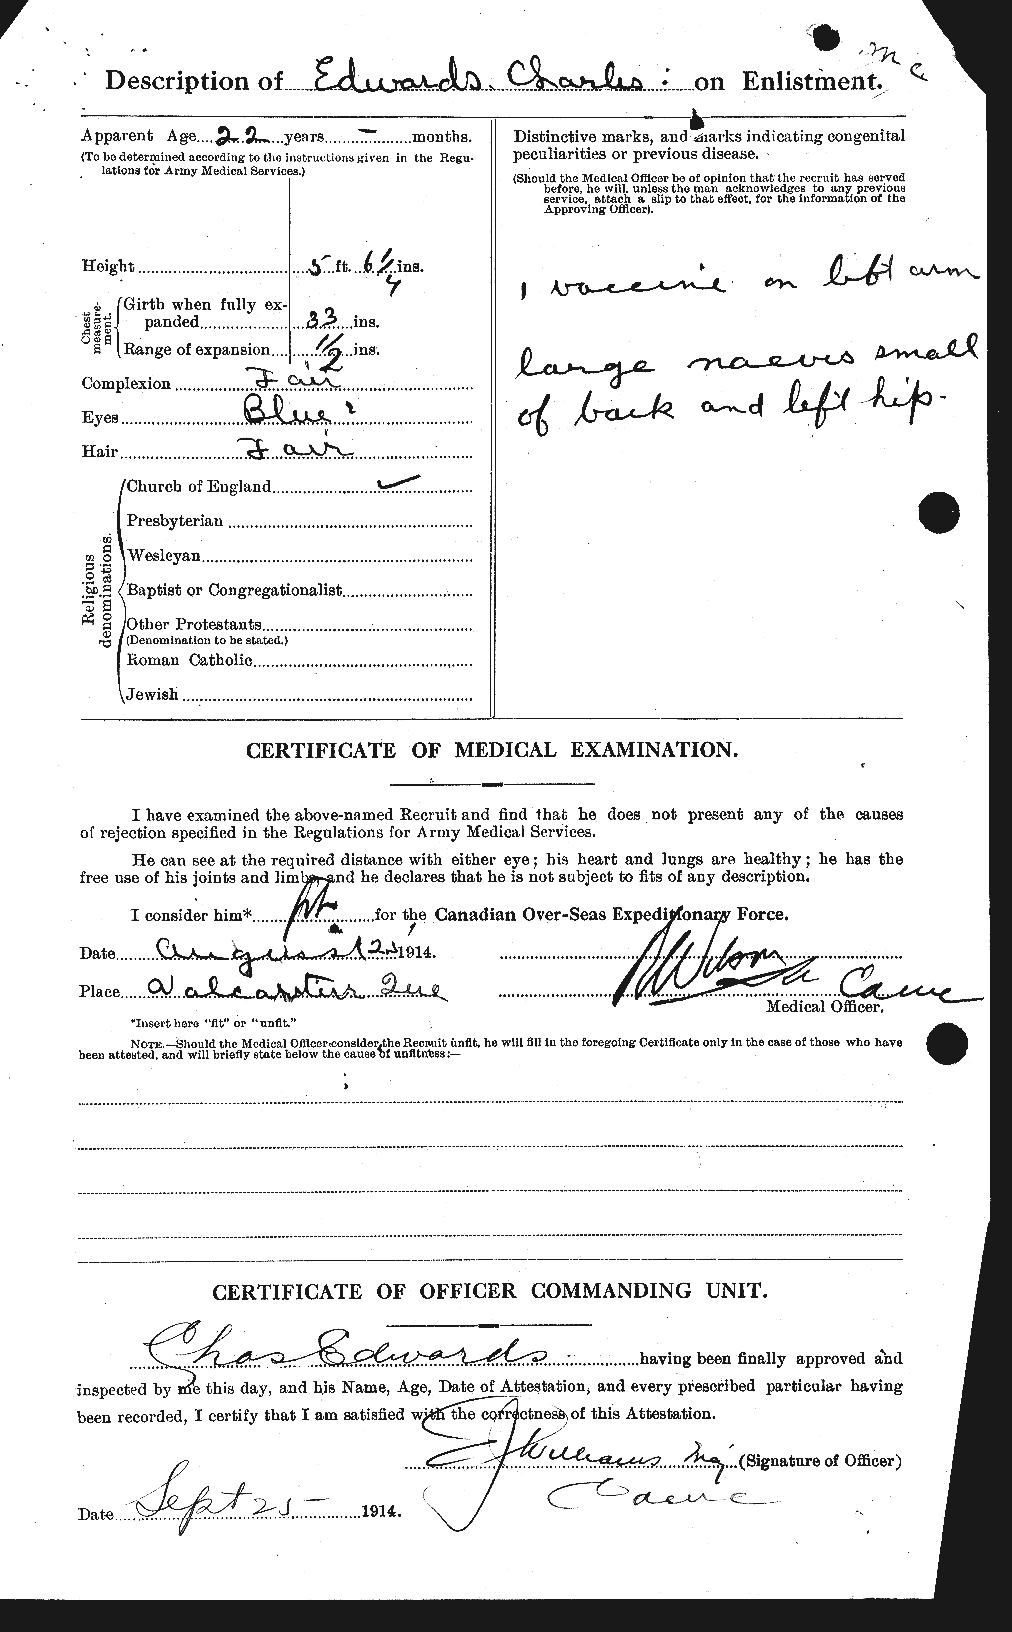 Dossiers du Personnel de la Première Guerre mondiale - CEC 307822b